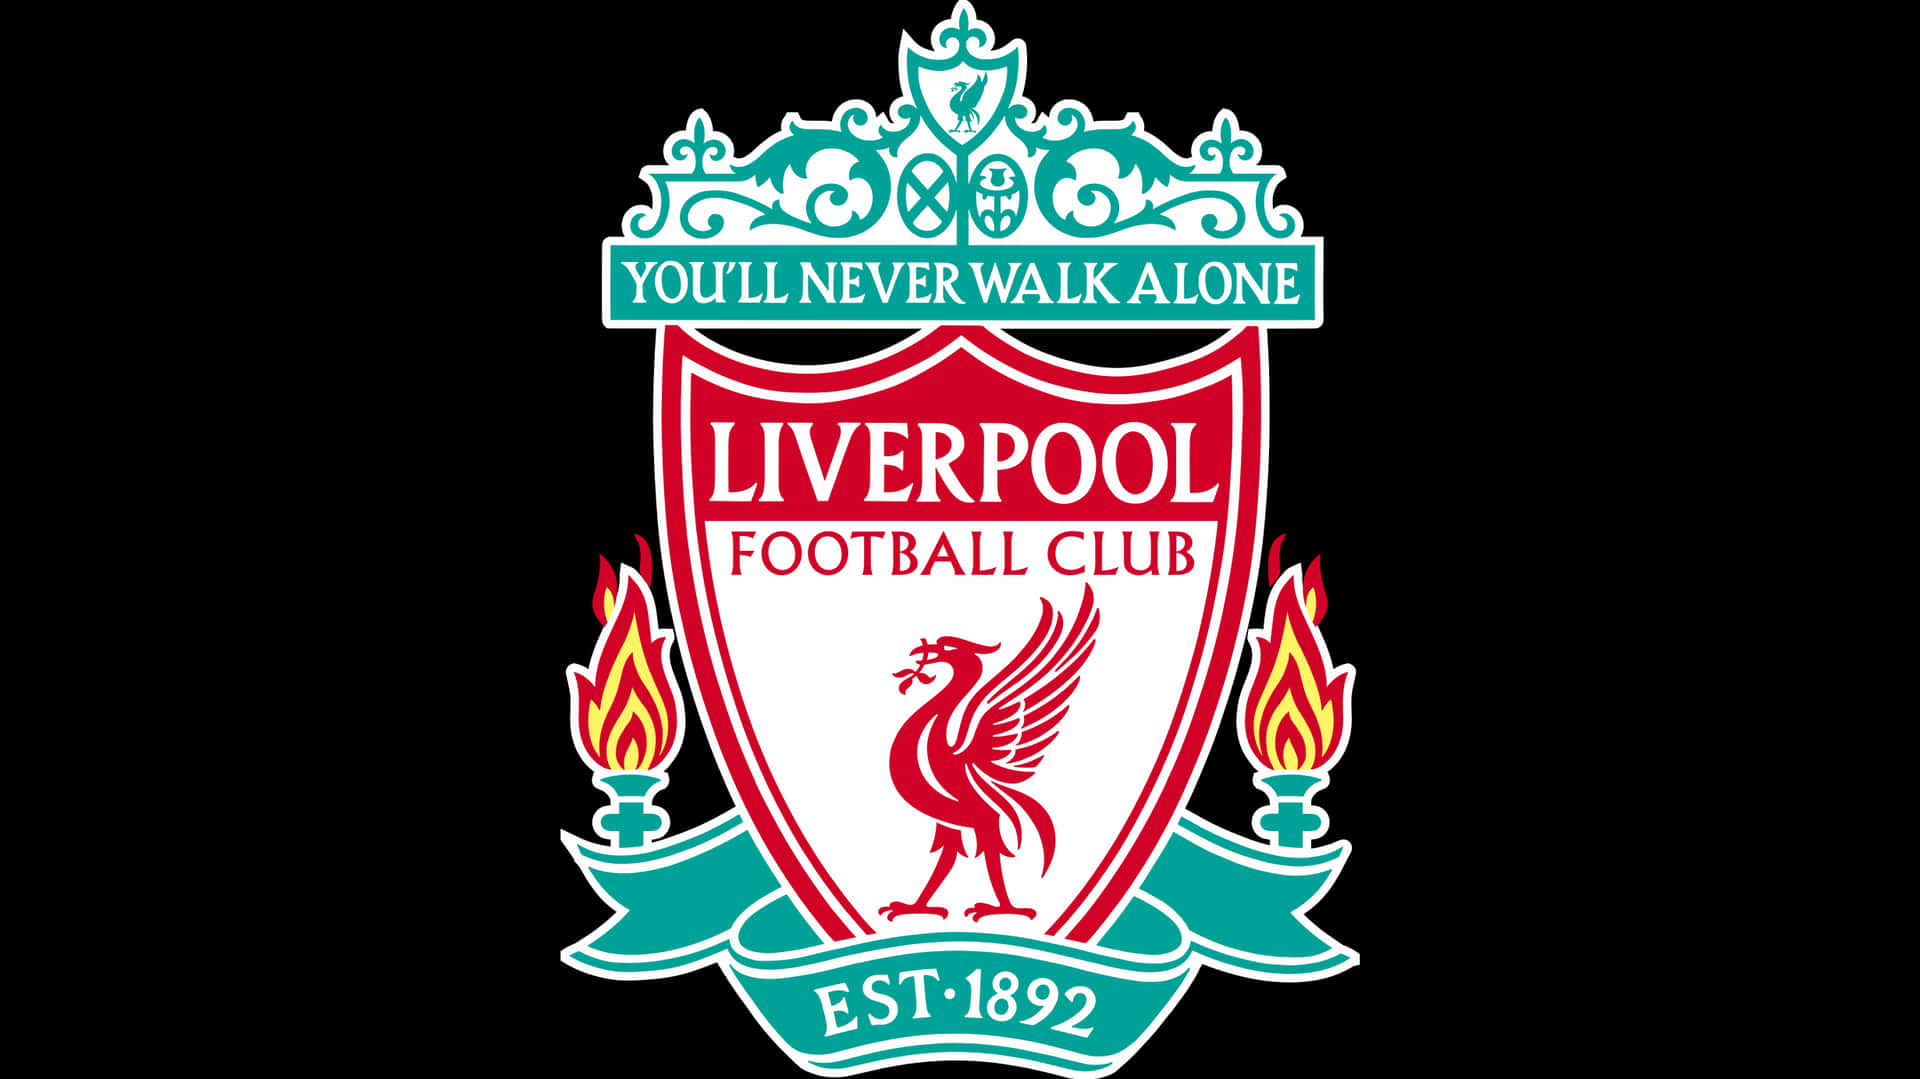 Abracesua Paixão E Represente O Liverpool F.c. No Seu Desktop. Papel de Parede